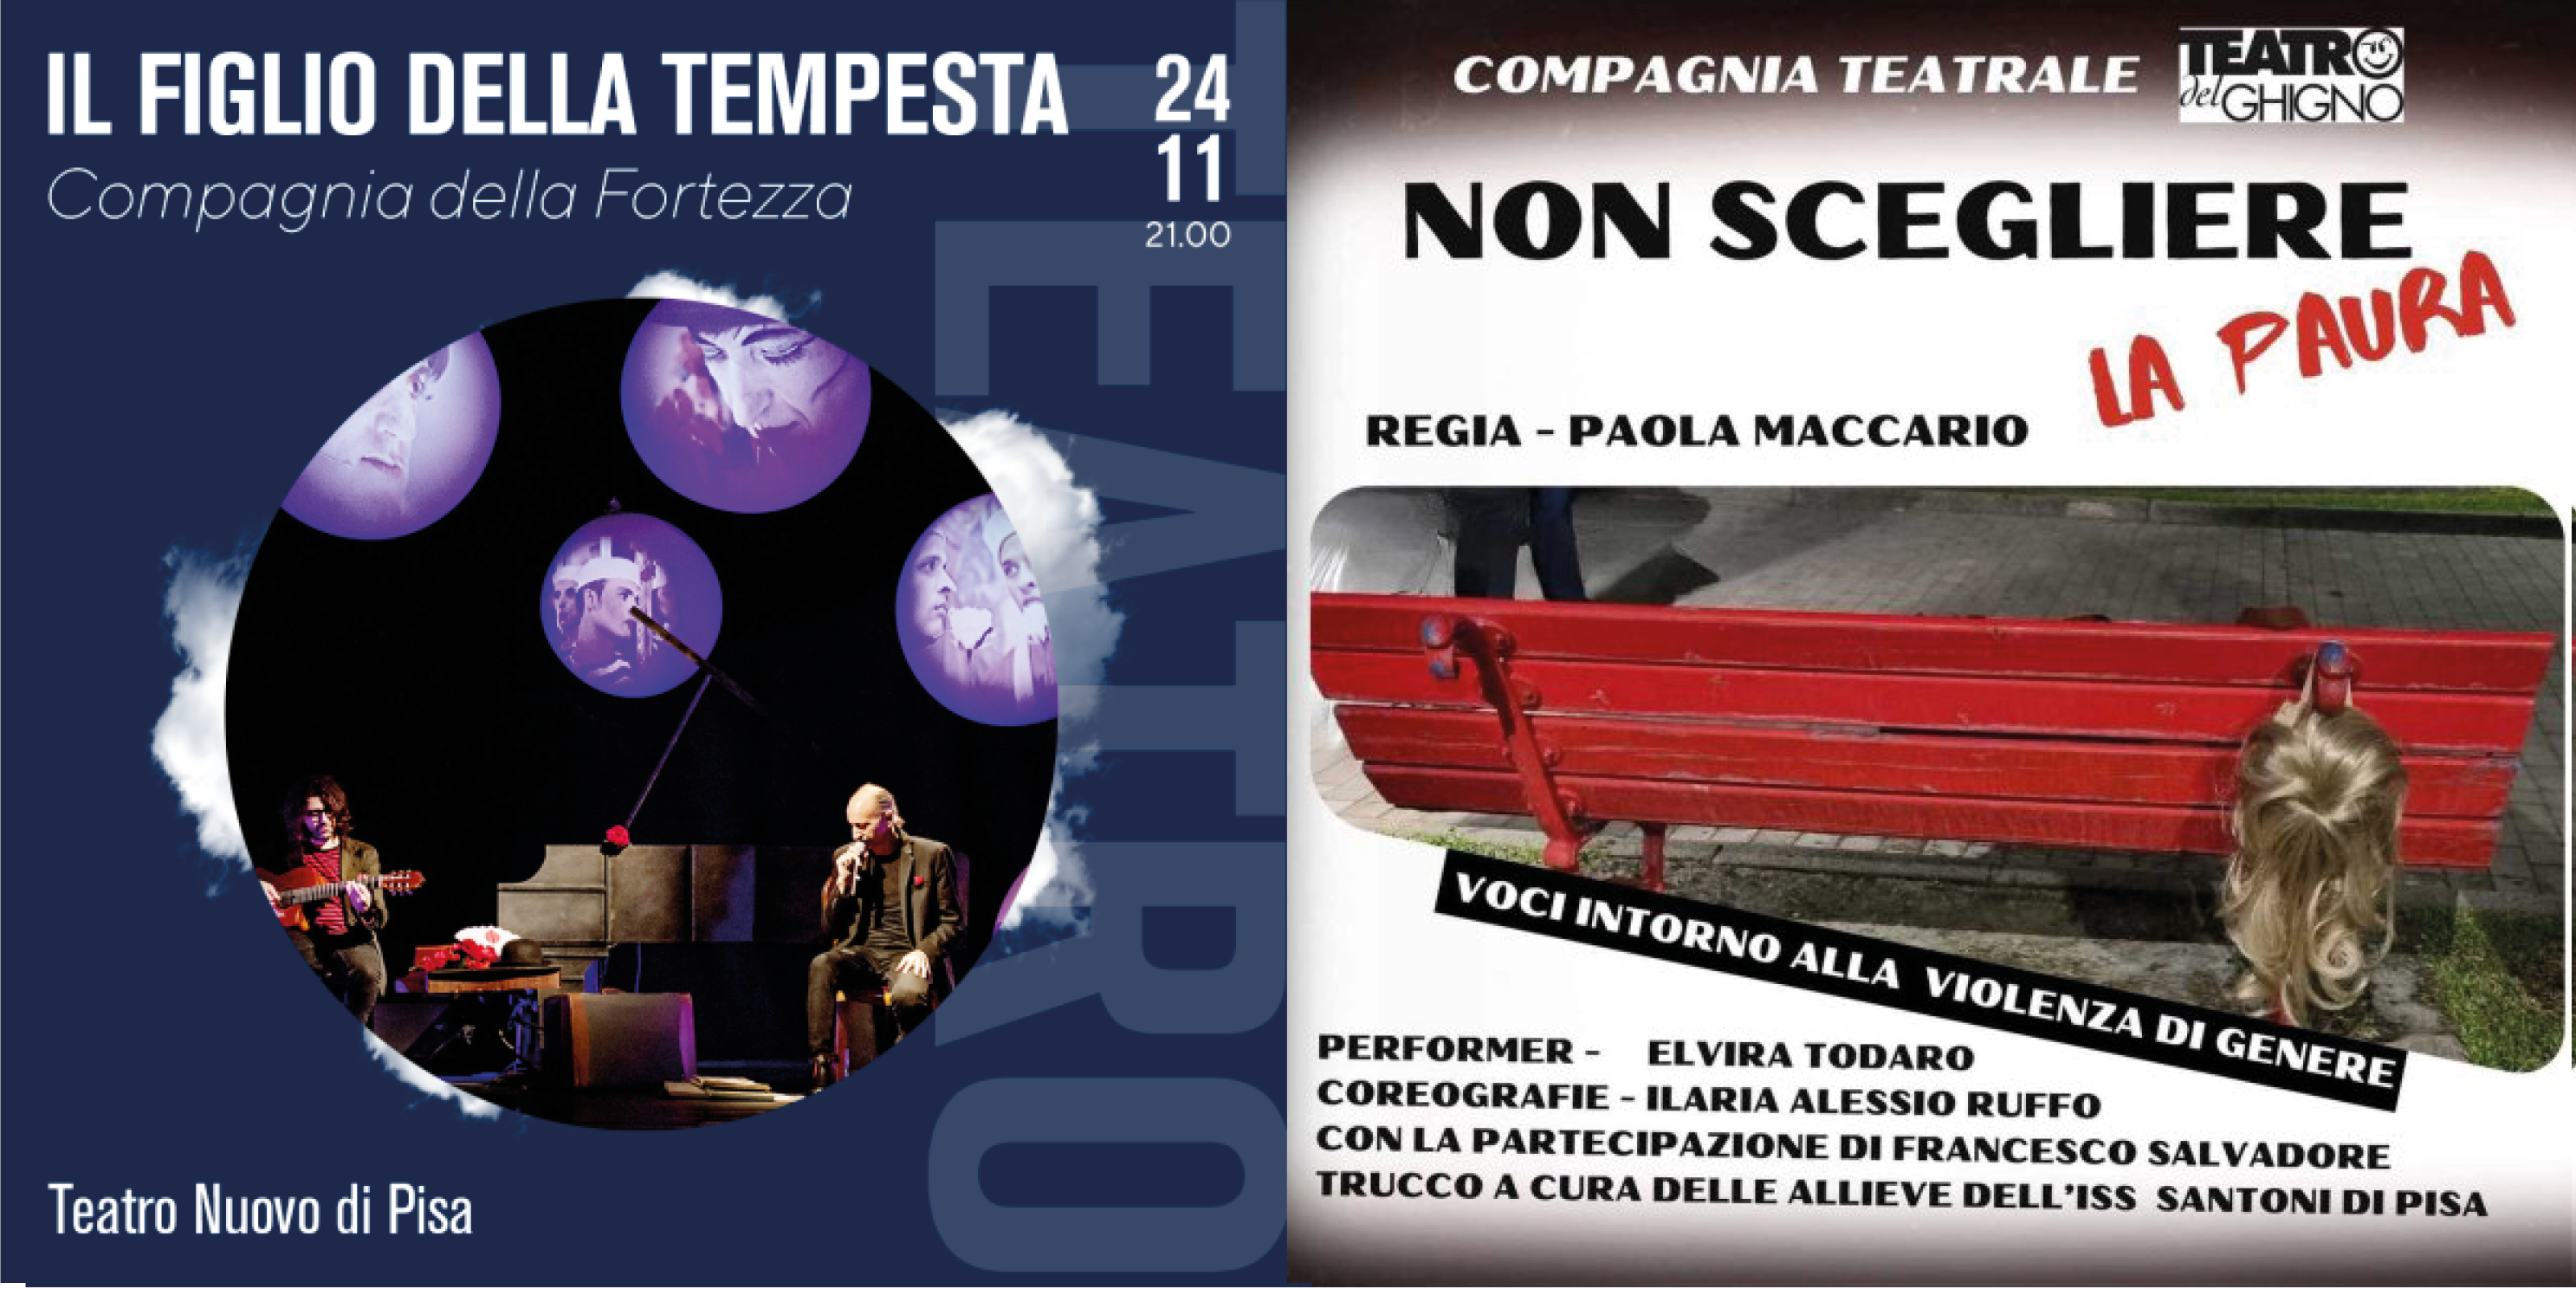 Gli appuntamenti del fine settimana (24-26 novembre) al Teatro Nuovo di Pisa